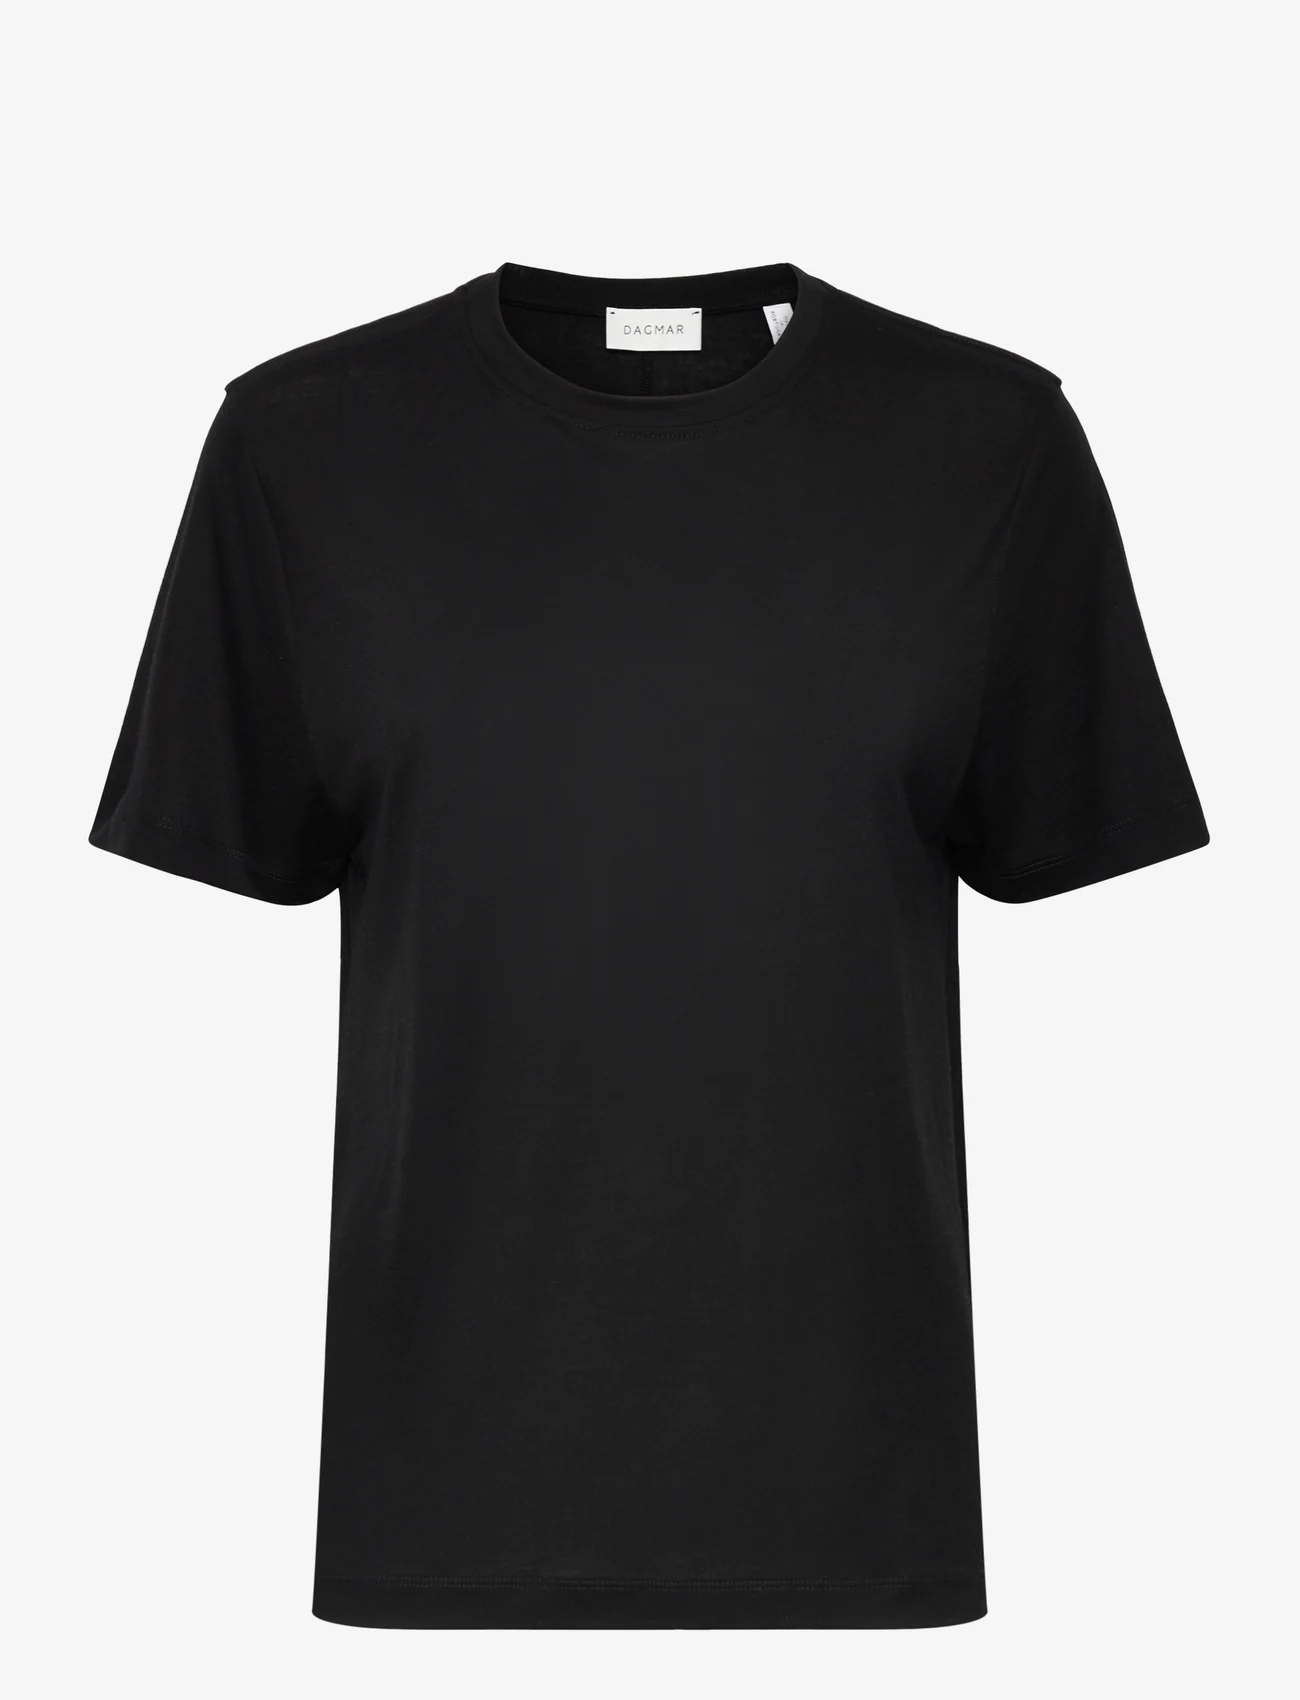 House Of Dagmar - Claudia T-shirt - black - 0